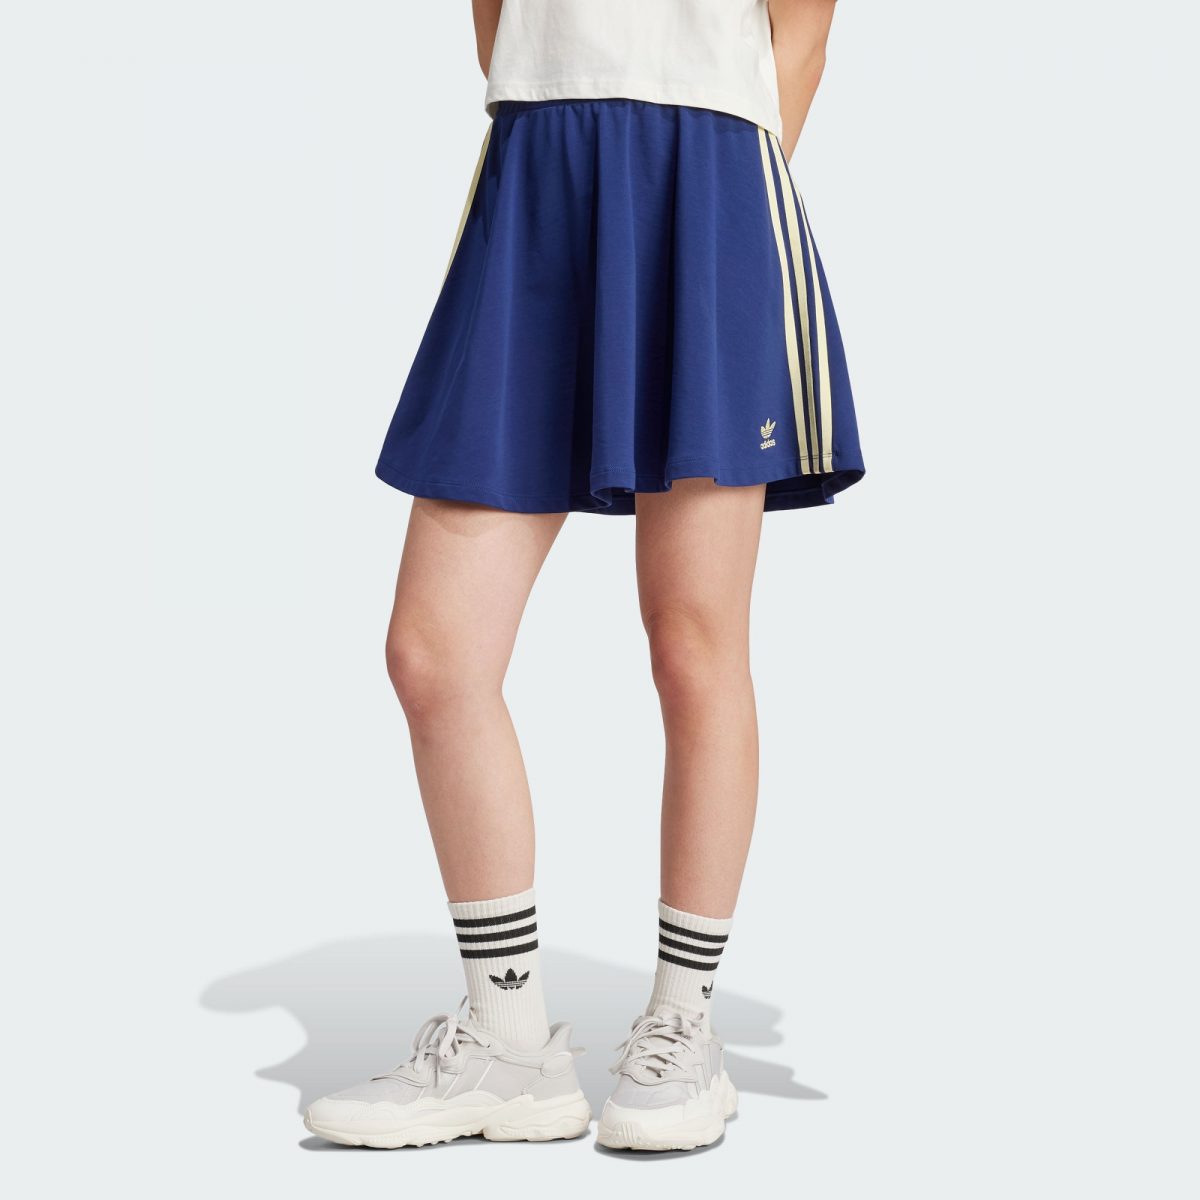 Женская юбка adidas SKIRT синяя фото